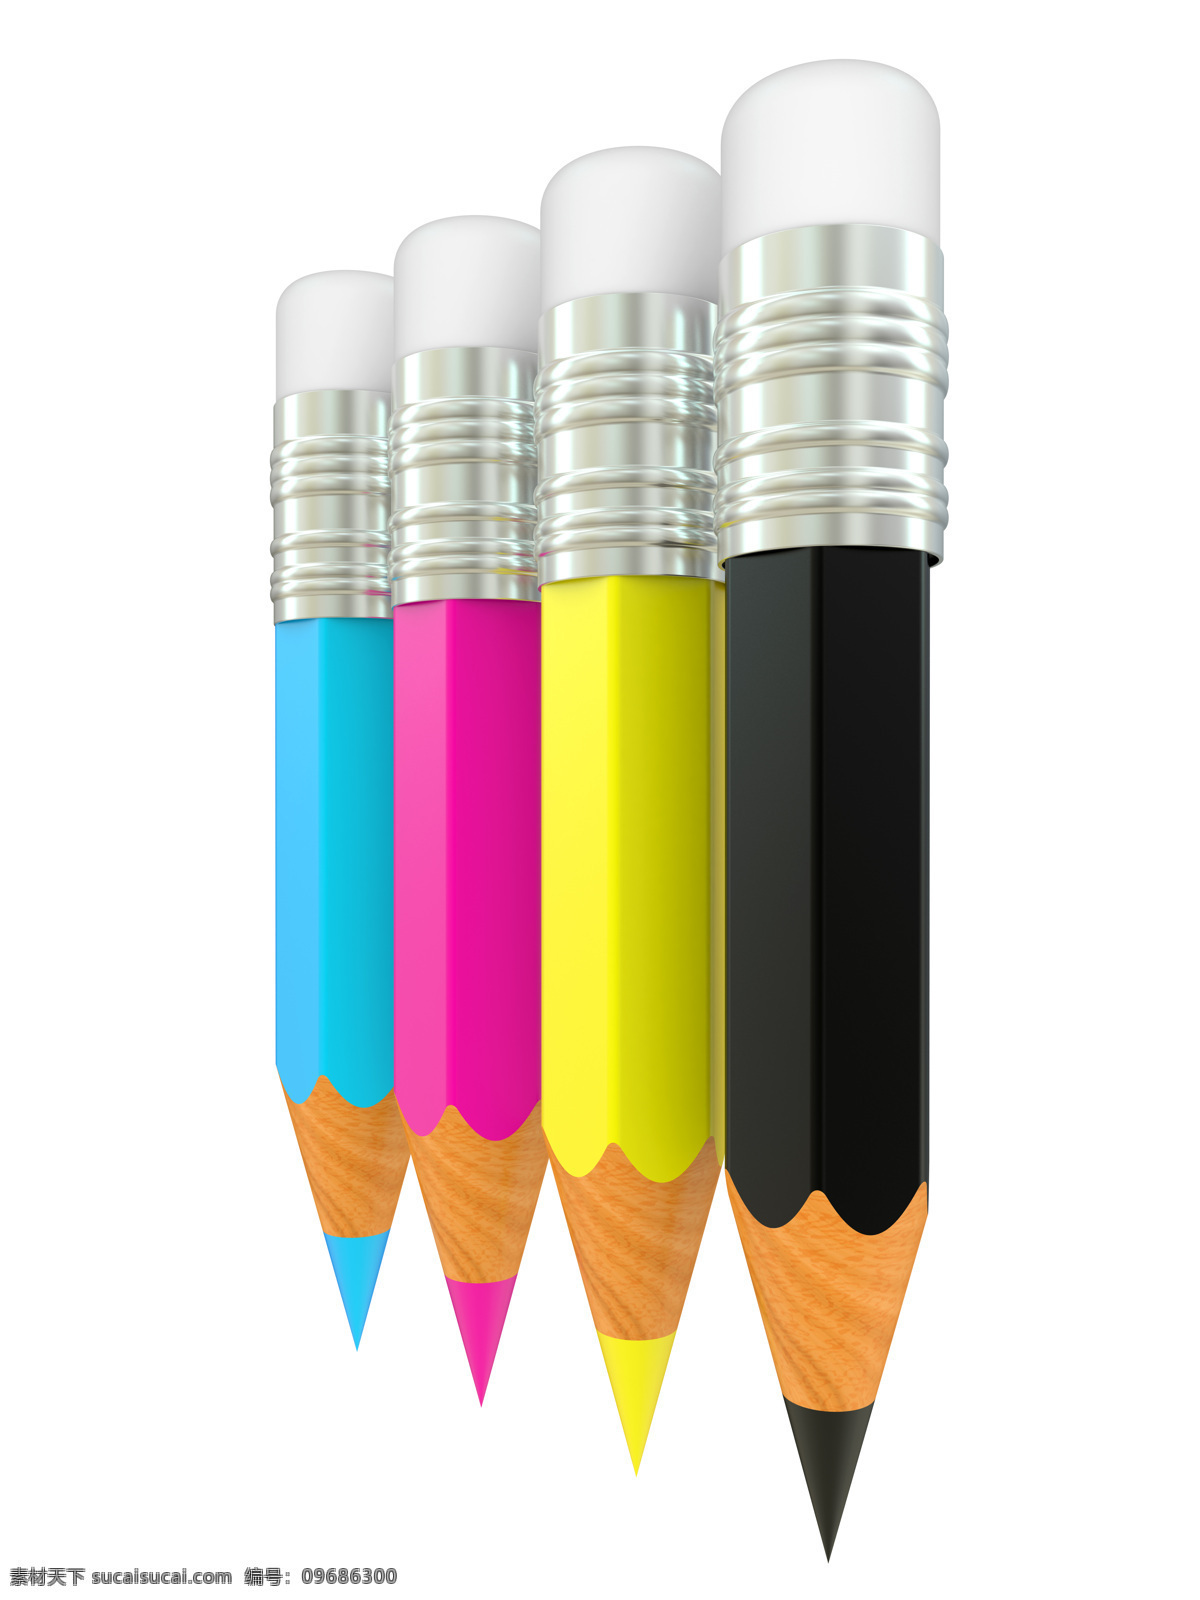 cmyk铅笔 色彩 模式 颜色 青色 柠檬黄 玫瑰红 黑色 铅笔 彩铅 其他类别 生活百科 白色